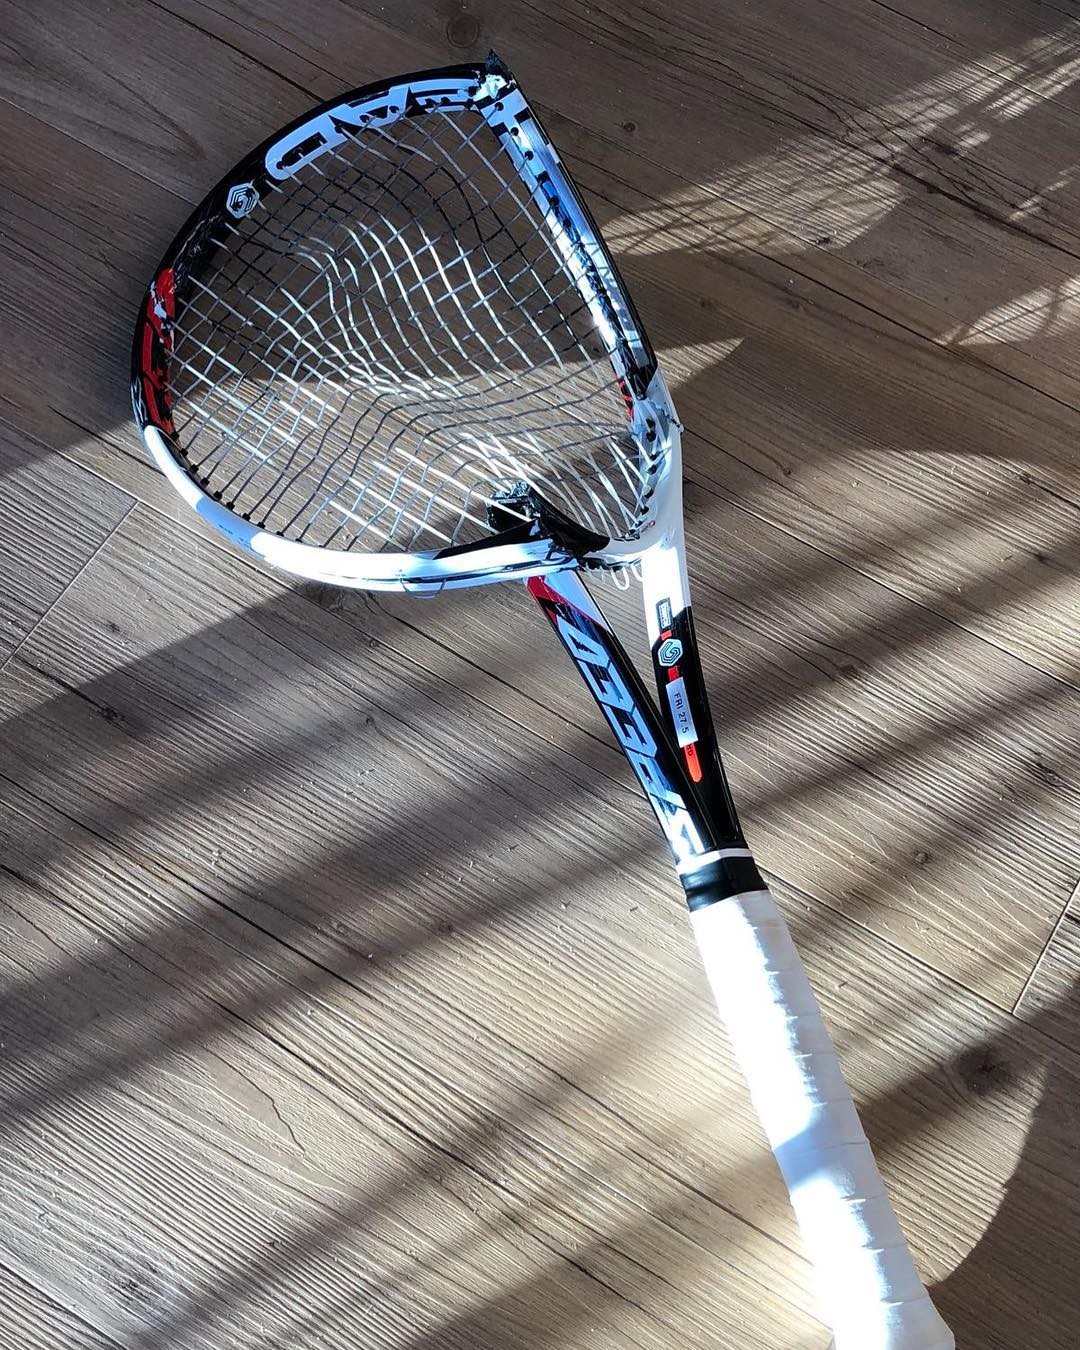 Novak Djokovic mostra raquete quebrada no Instagram (Foto: Reprodução/Instagram)